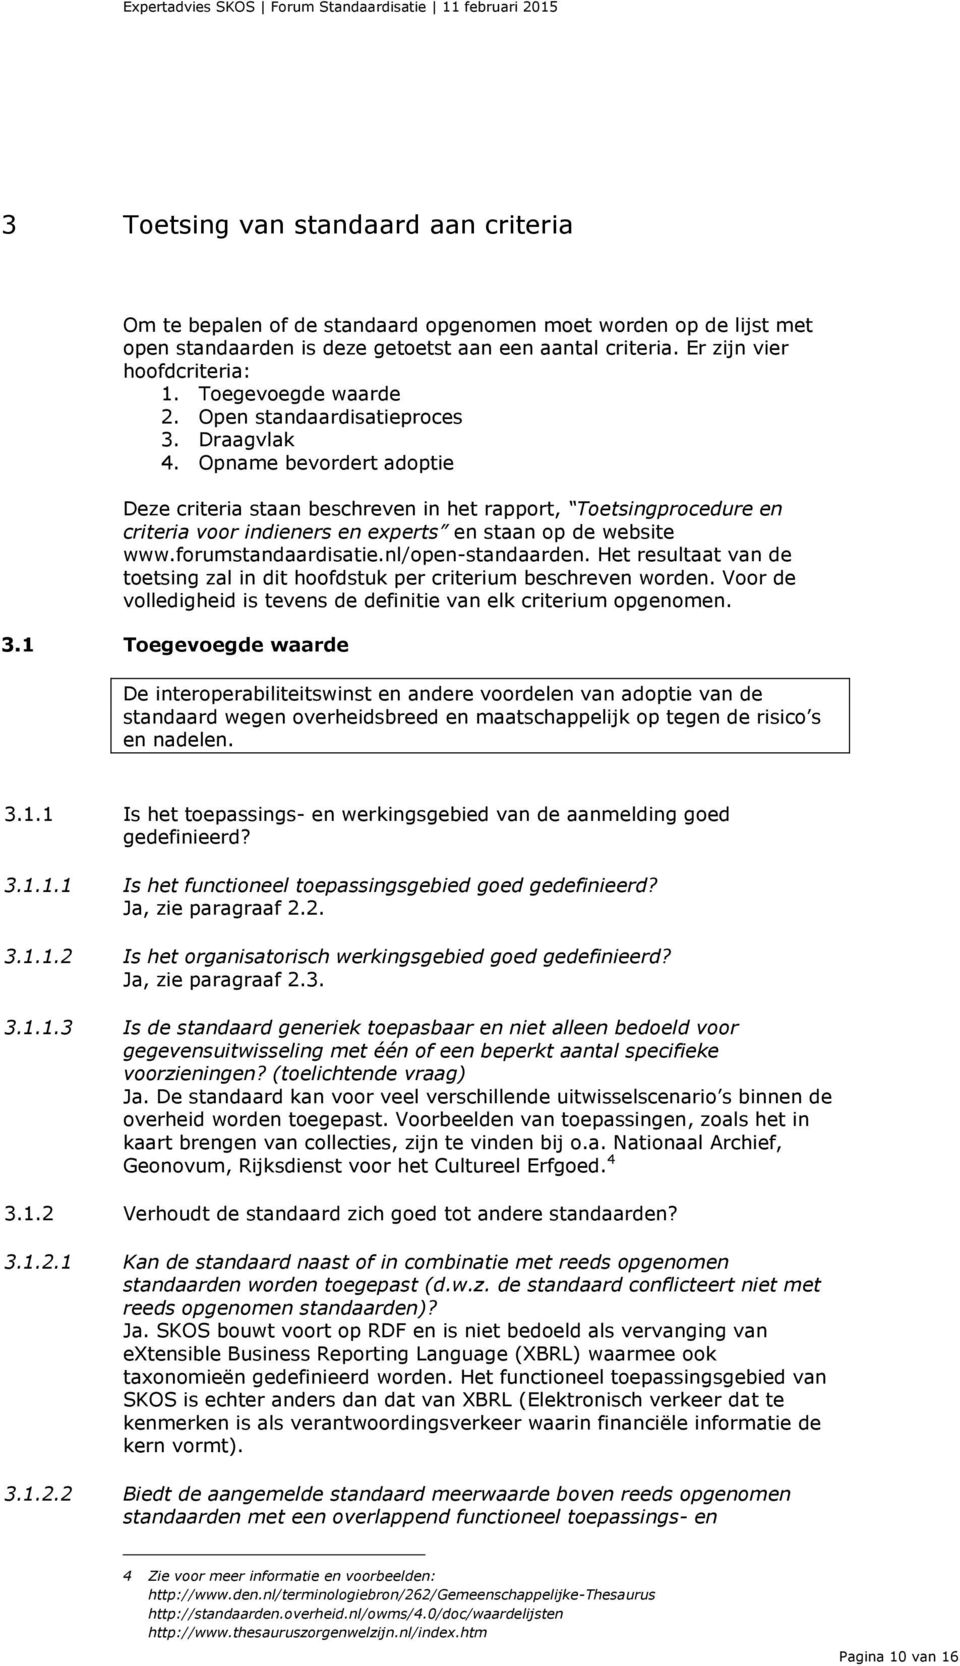 Opname bevordert adoptie Deze criteria staan beschreven in het rapport, Toetsingprocedure en criteria voor indieners en experts en staan op de website www.forumstandaardisatie.nl/open-standaarden.